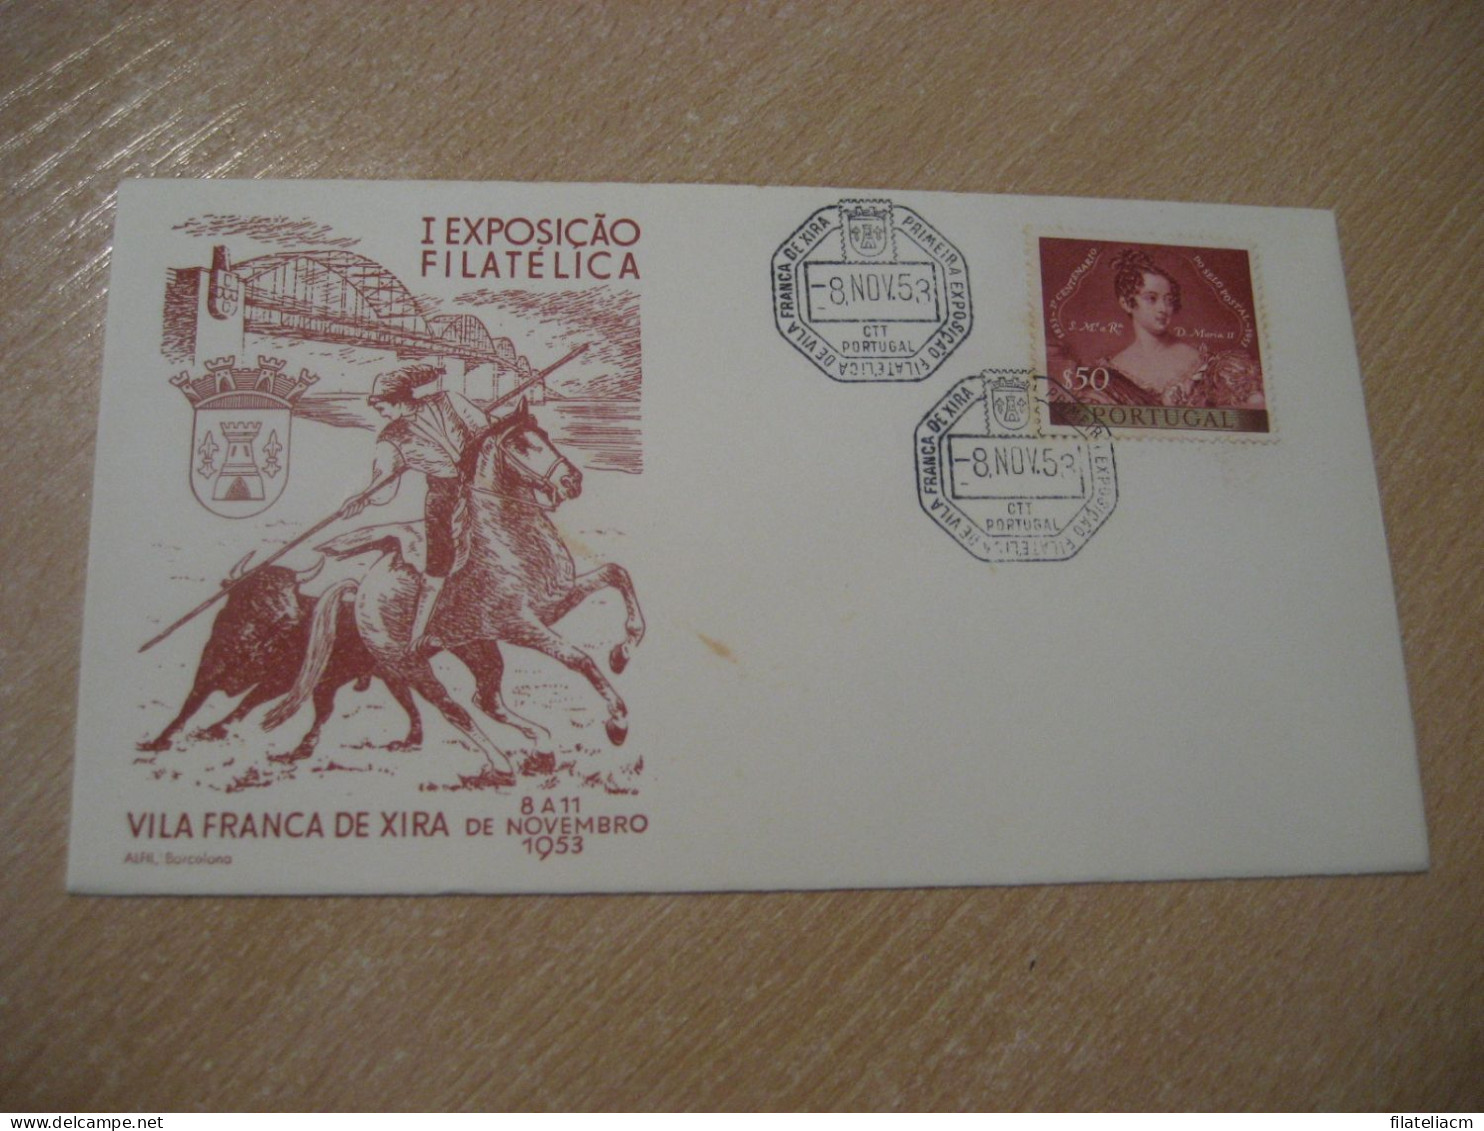 VILA FRANCA DE XIRA 1953 Expo Filatelica Toro Rejoneador Cow Bull Horse Matador Cancel Cover PORTUGAL - Storia Postale